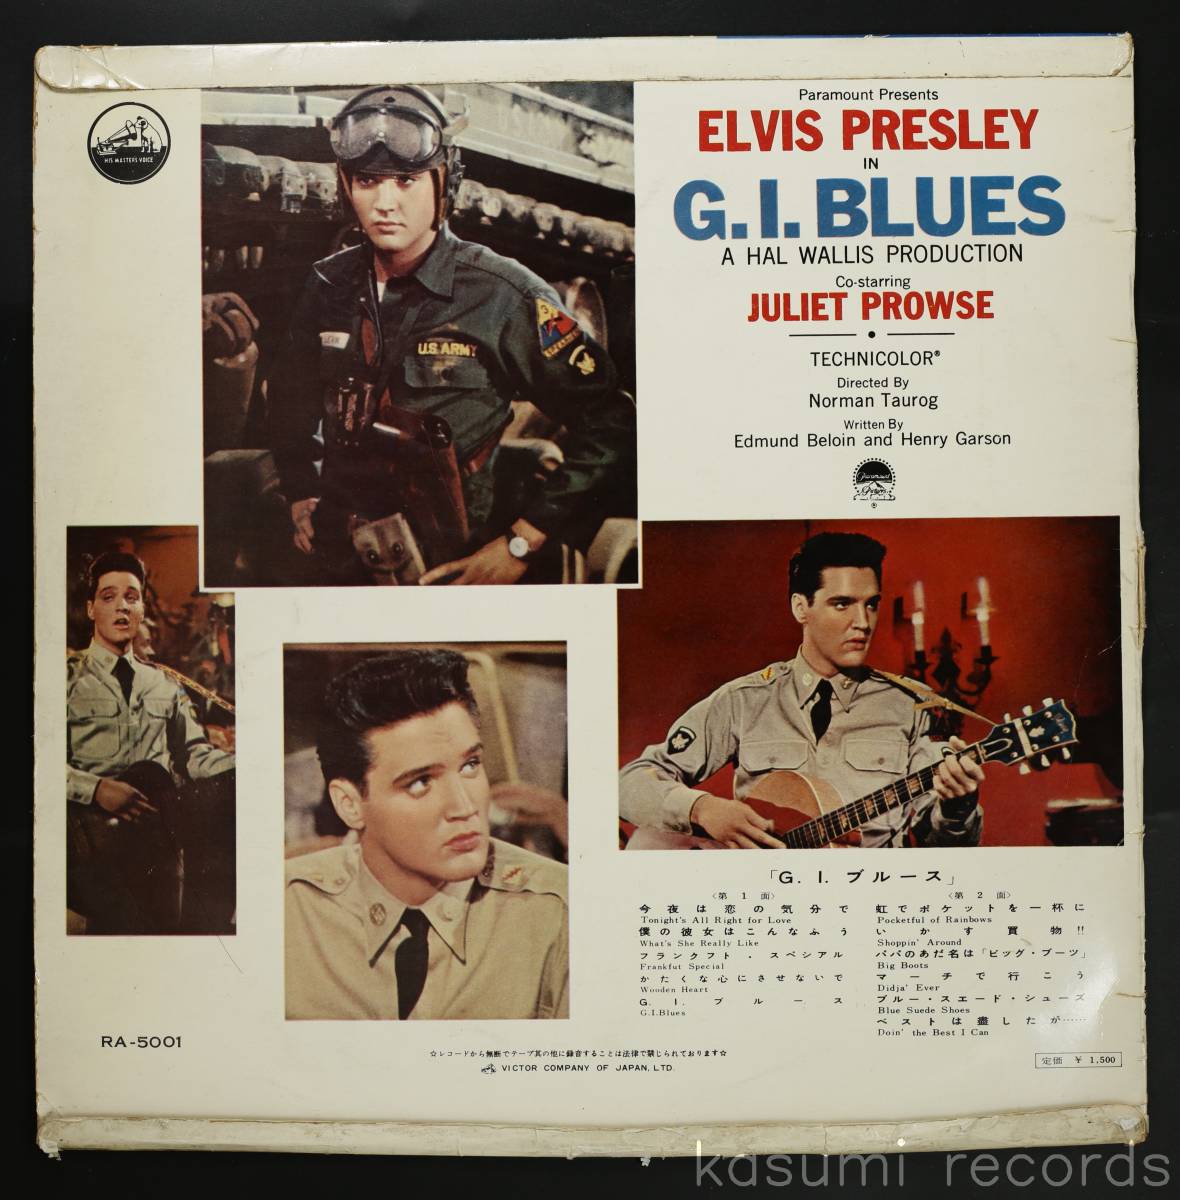 [ внутренний первая версия LP] L vi s* Press Lee ELVIS PRESLEY/G.I. блюз G.I.BLUES( средний внизу товар,MONO,RA-5001, винт jacket )